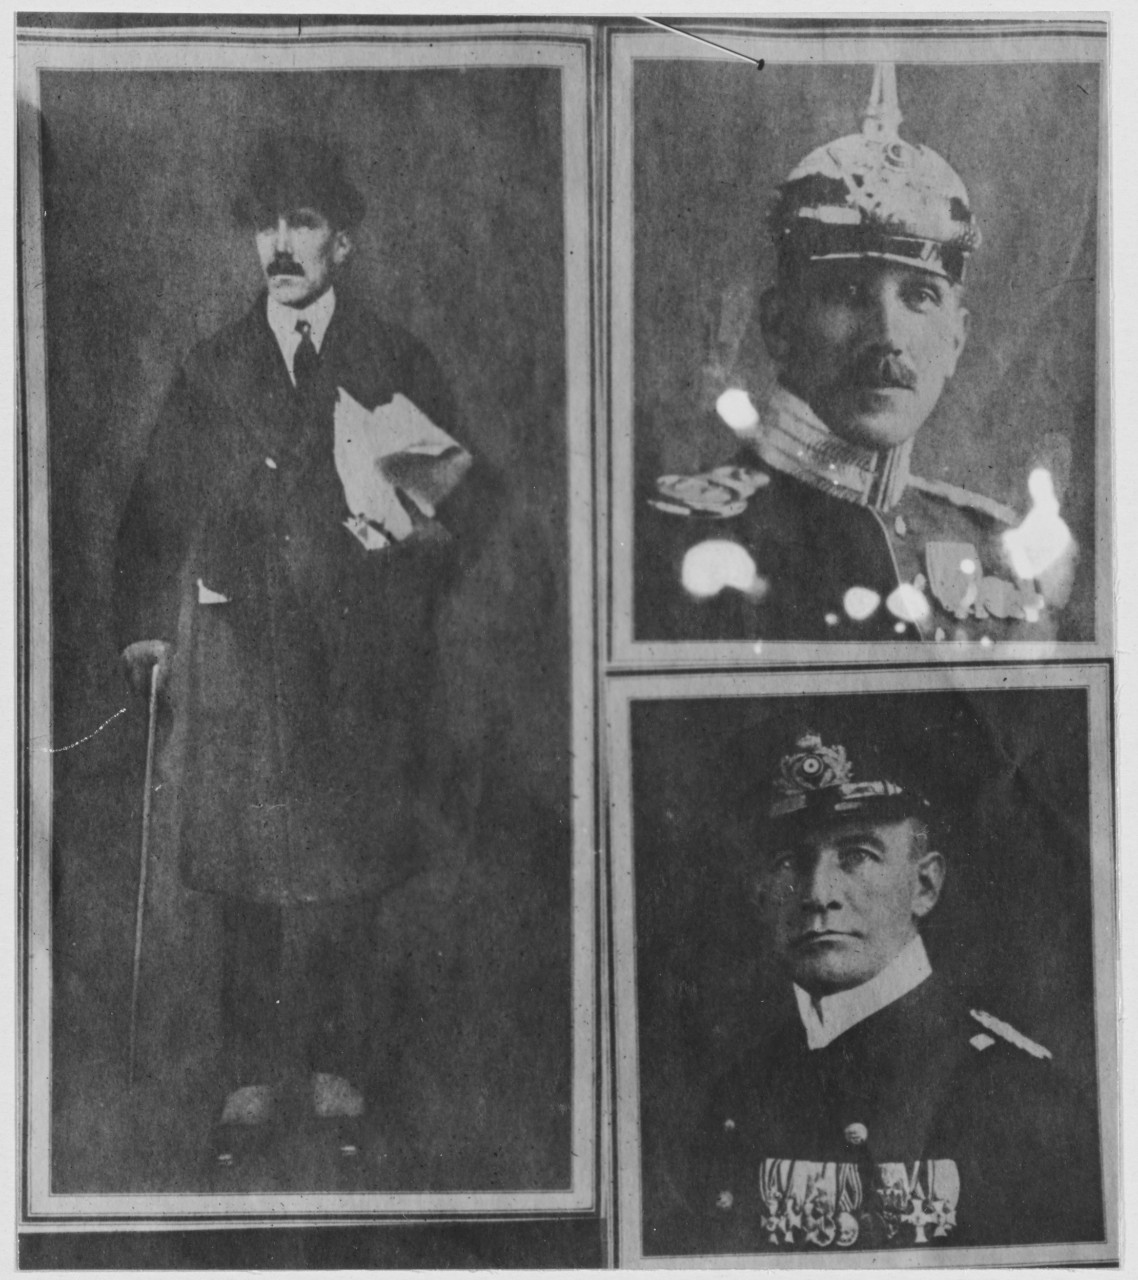 Portraits of German men Von Sudan, Von Papen, and Boy Ed